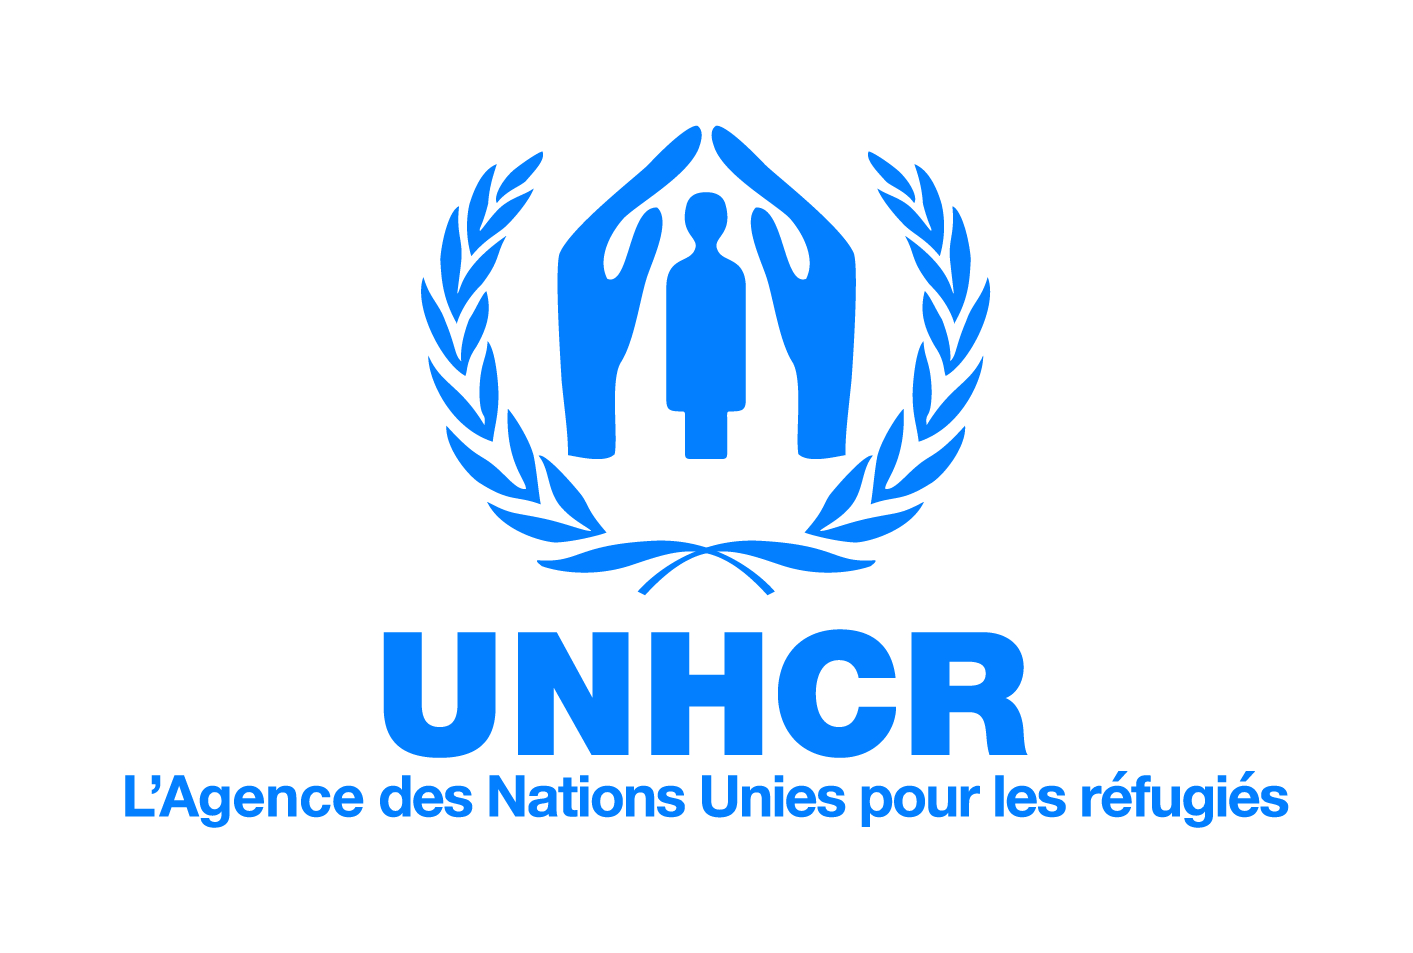 LE HCR, L'AGENCE DES NATIONS UNIES POUR LES RÉFUGIÉS